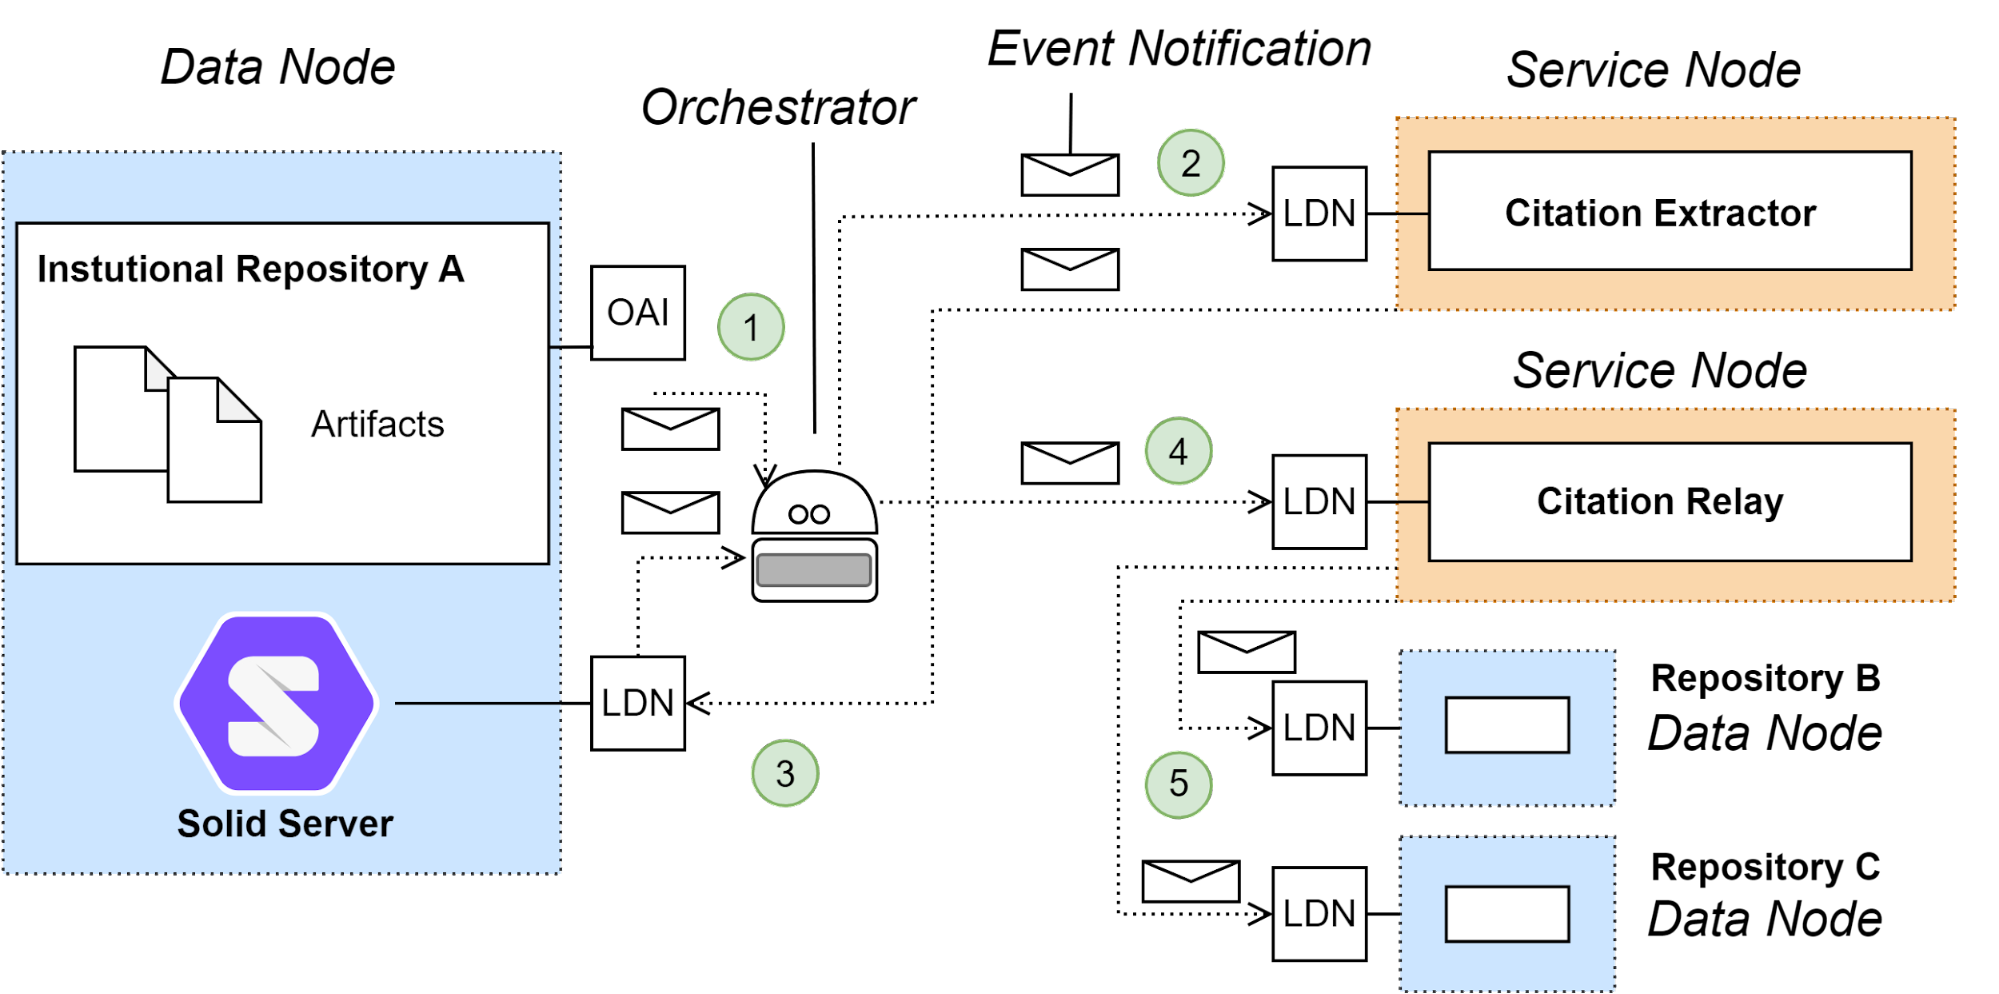 Figure 2. The citation network experiment architecture